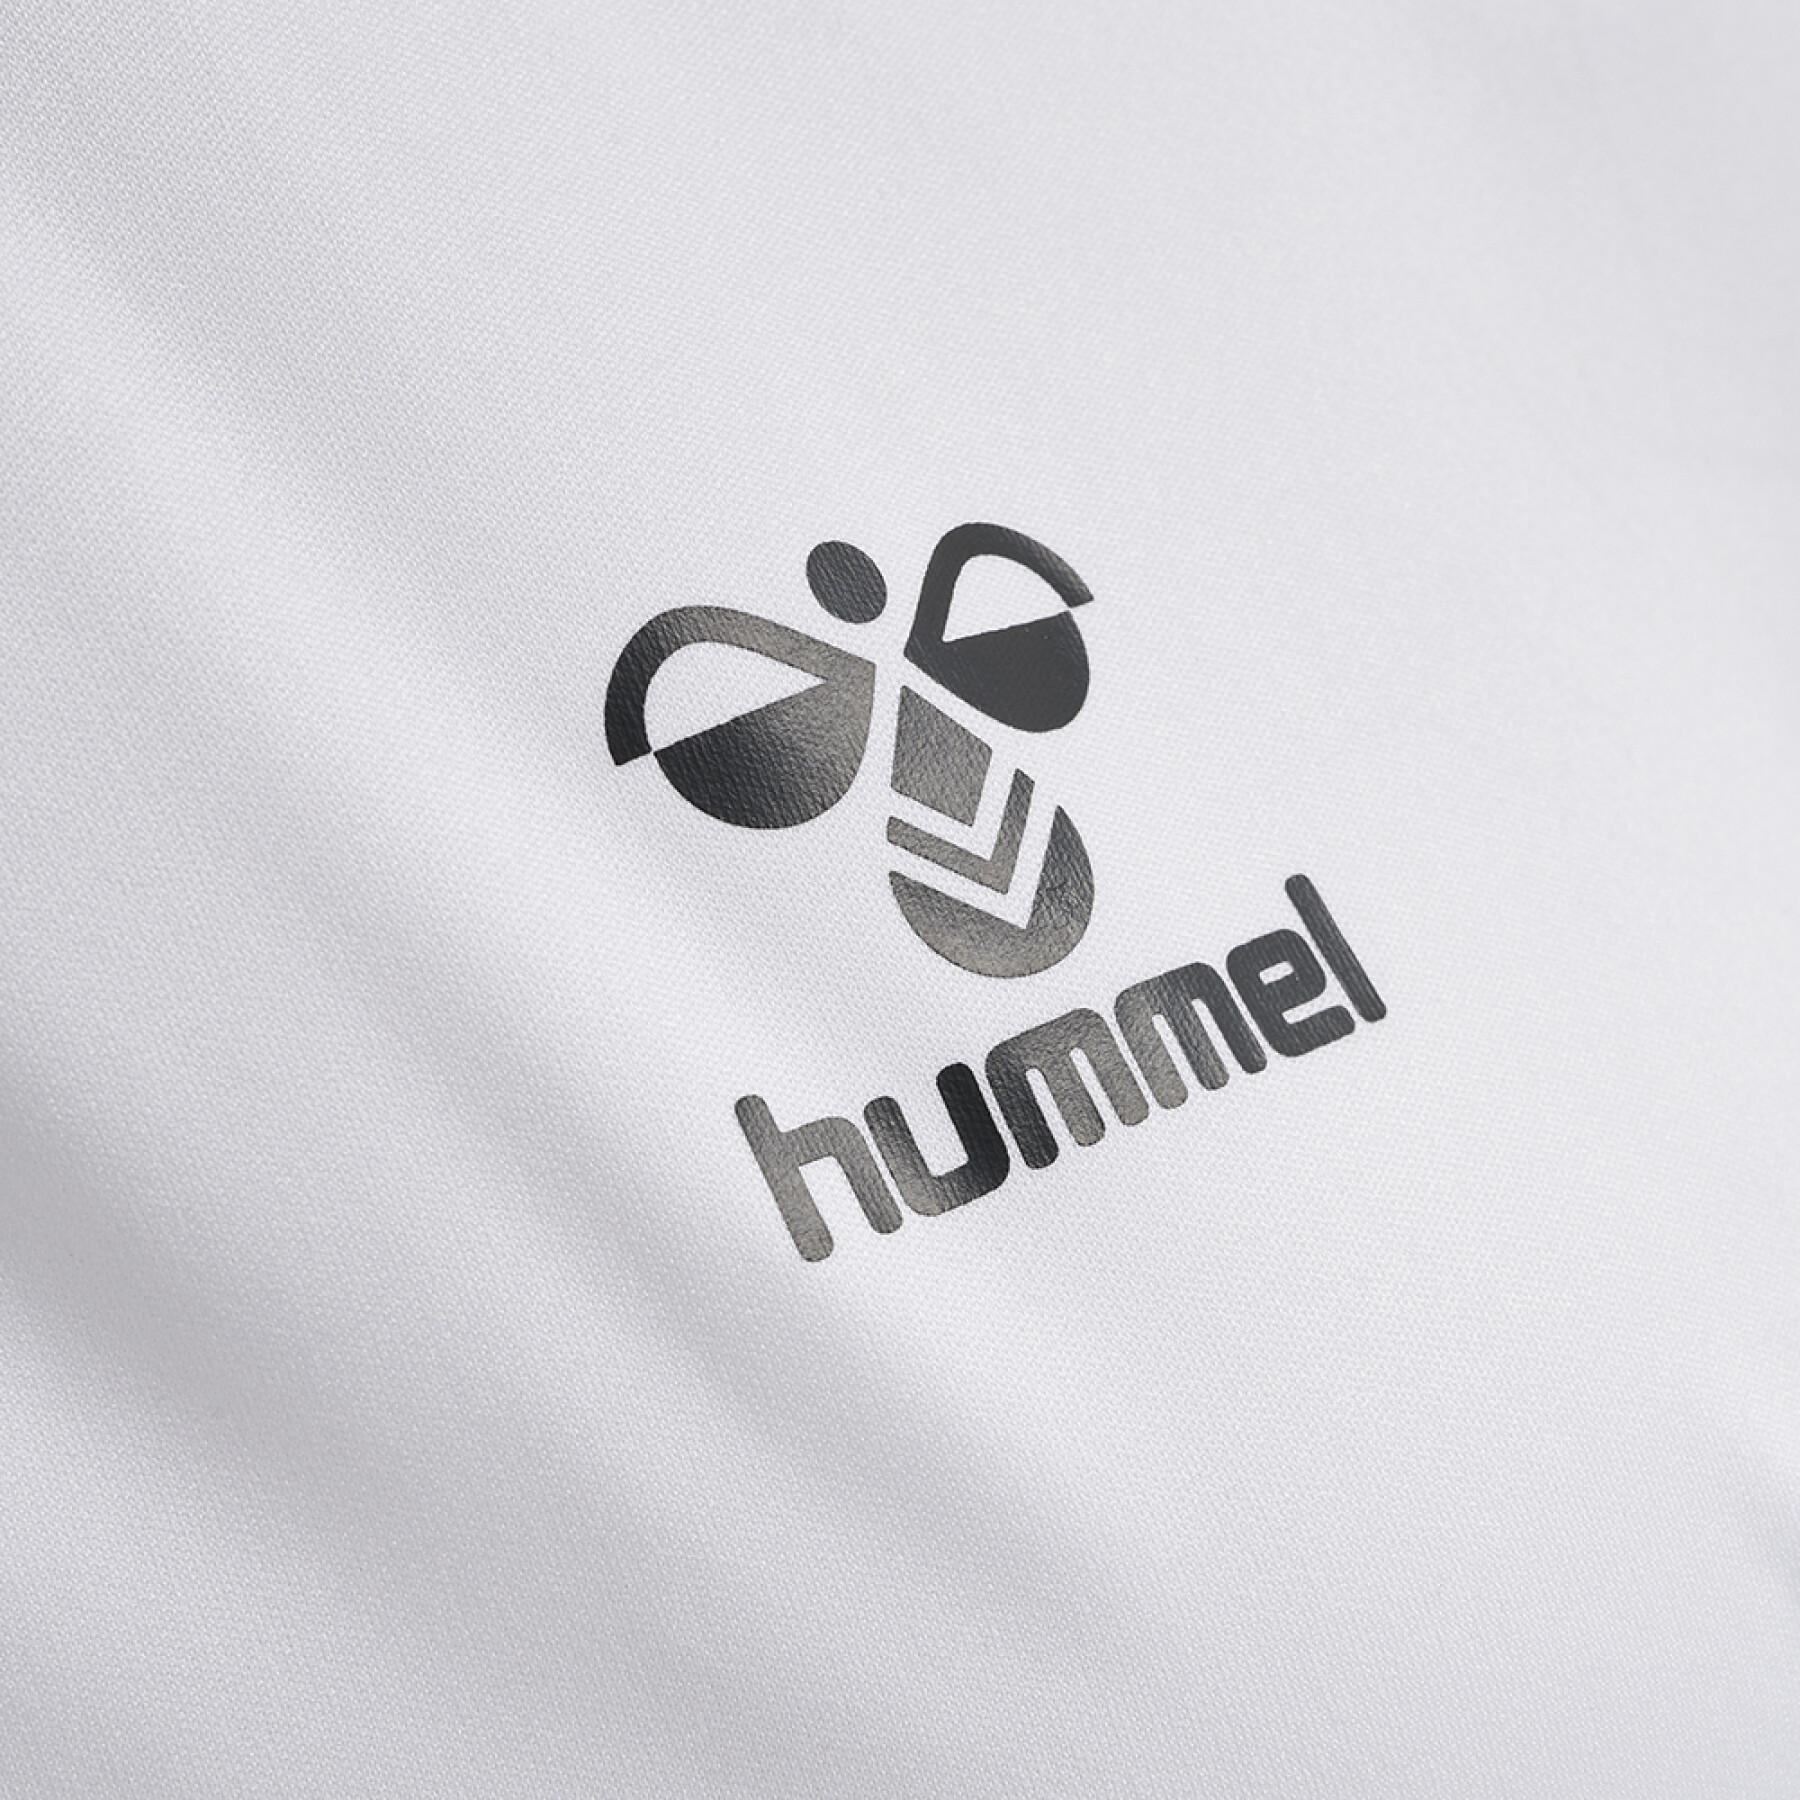 T-shirt femme Hummel hmlhmlCORE volley